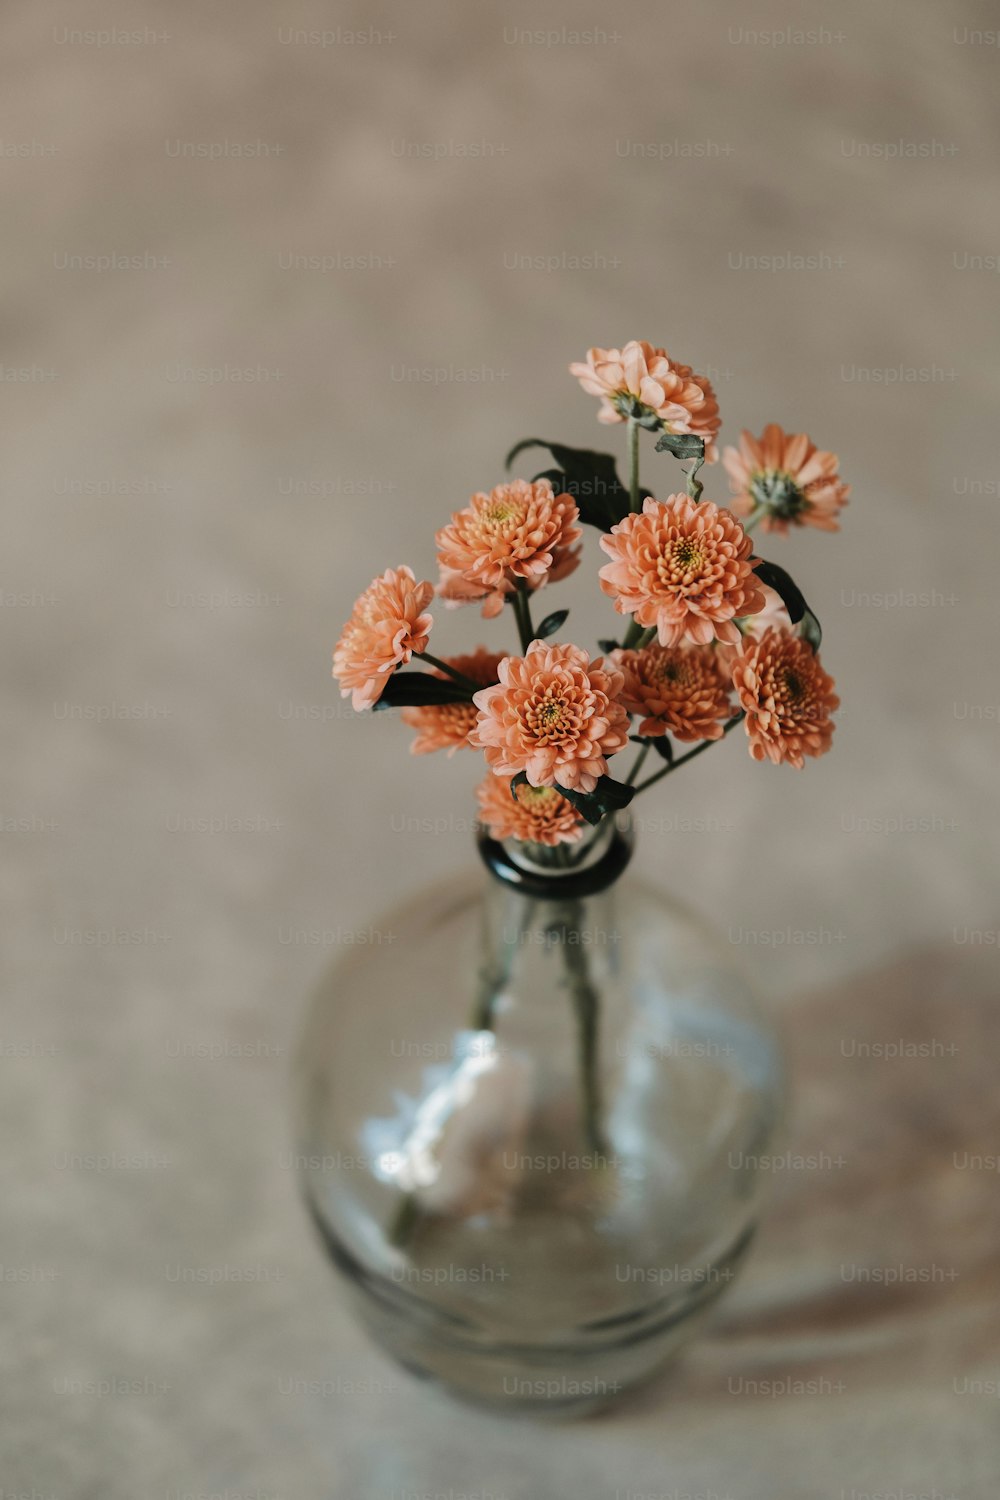 um vaso de vidro cheio de flores em cima de uma mesa